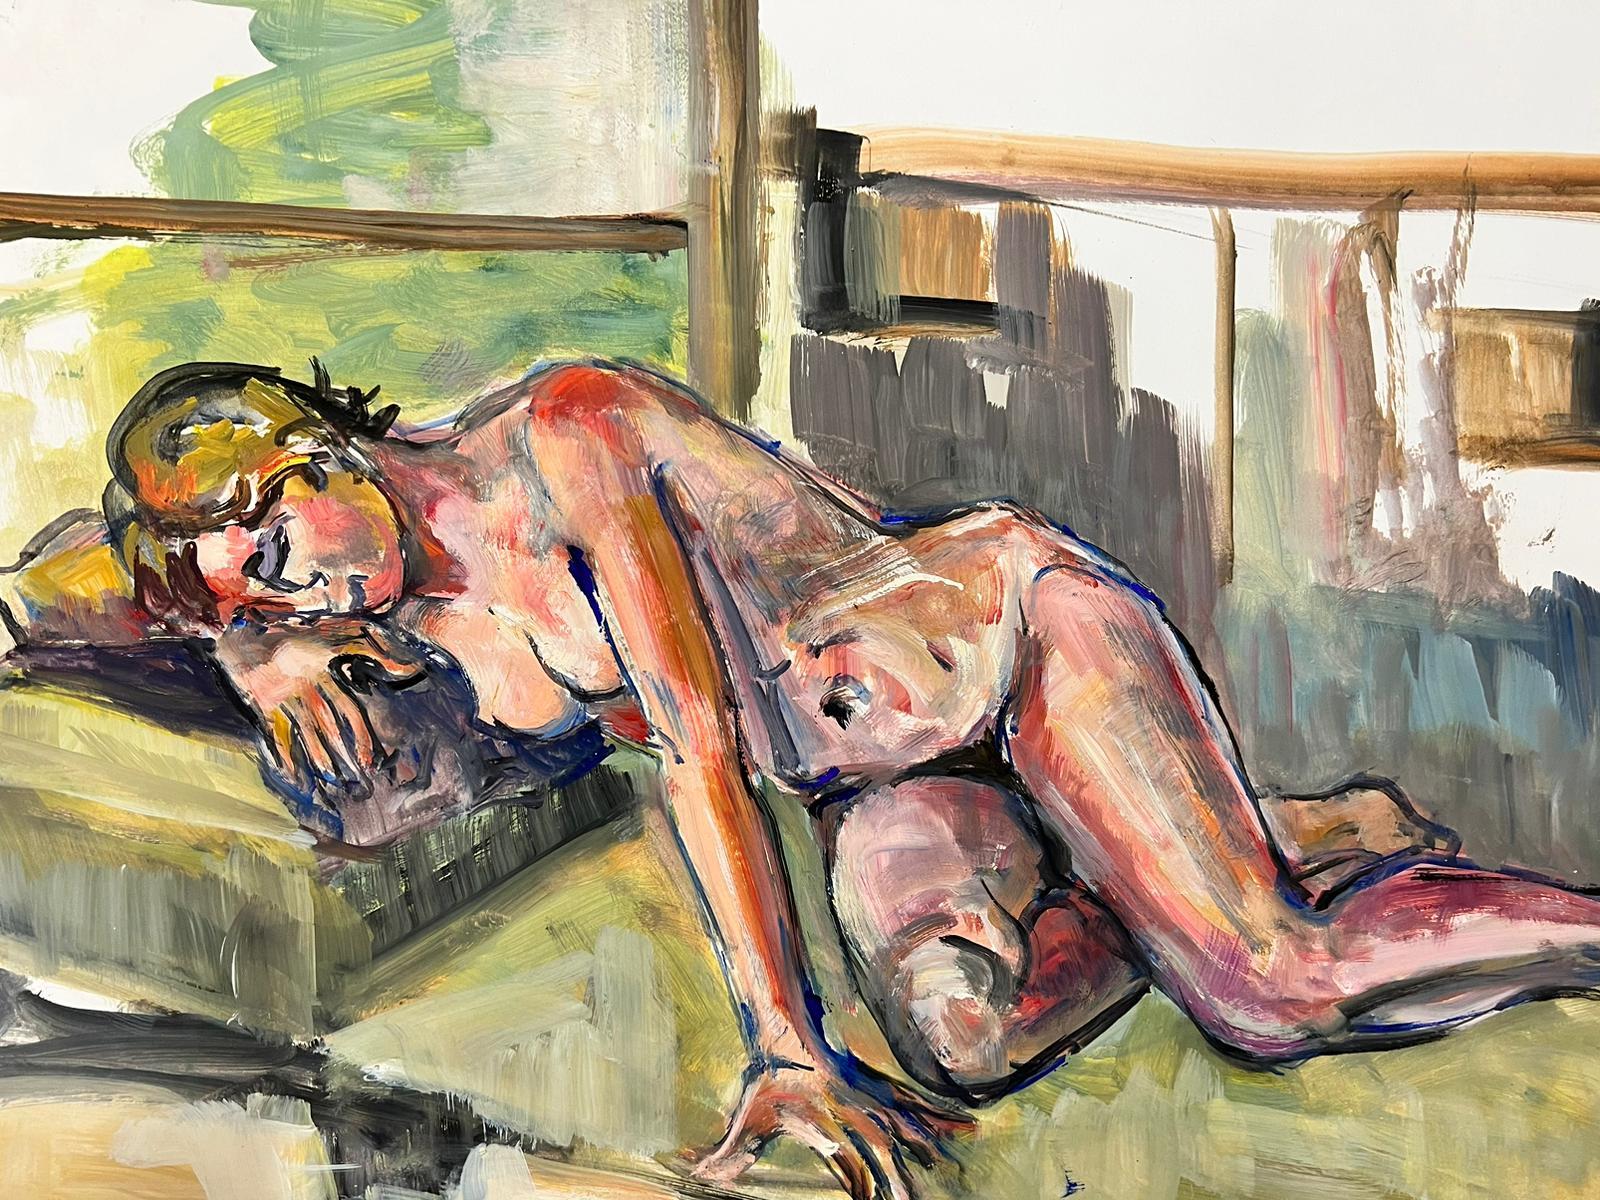 Le modèle Artistics
Portrait d'une femme nue allongée
École française, vers 1970
peinture à l'huile sur carton, non encadrée
taille : 18 x 25.5 pouces
état : globalement très bon, quelques légères marques à la surface mais rien de préjudiciable à